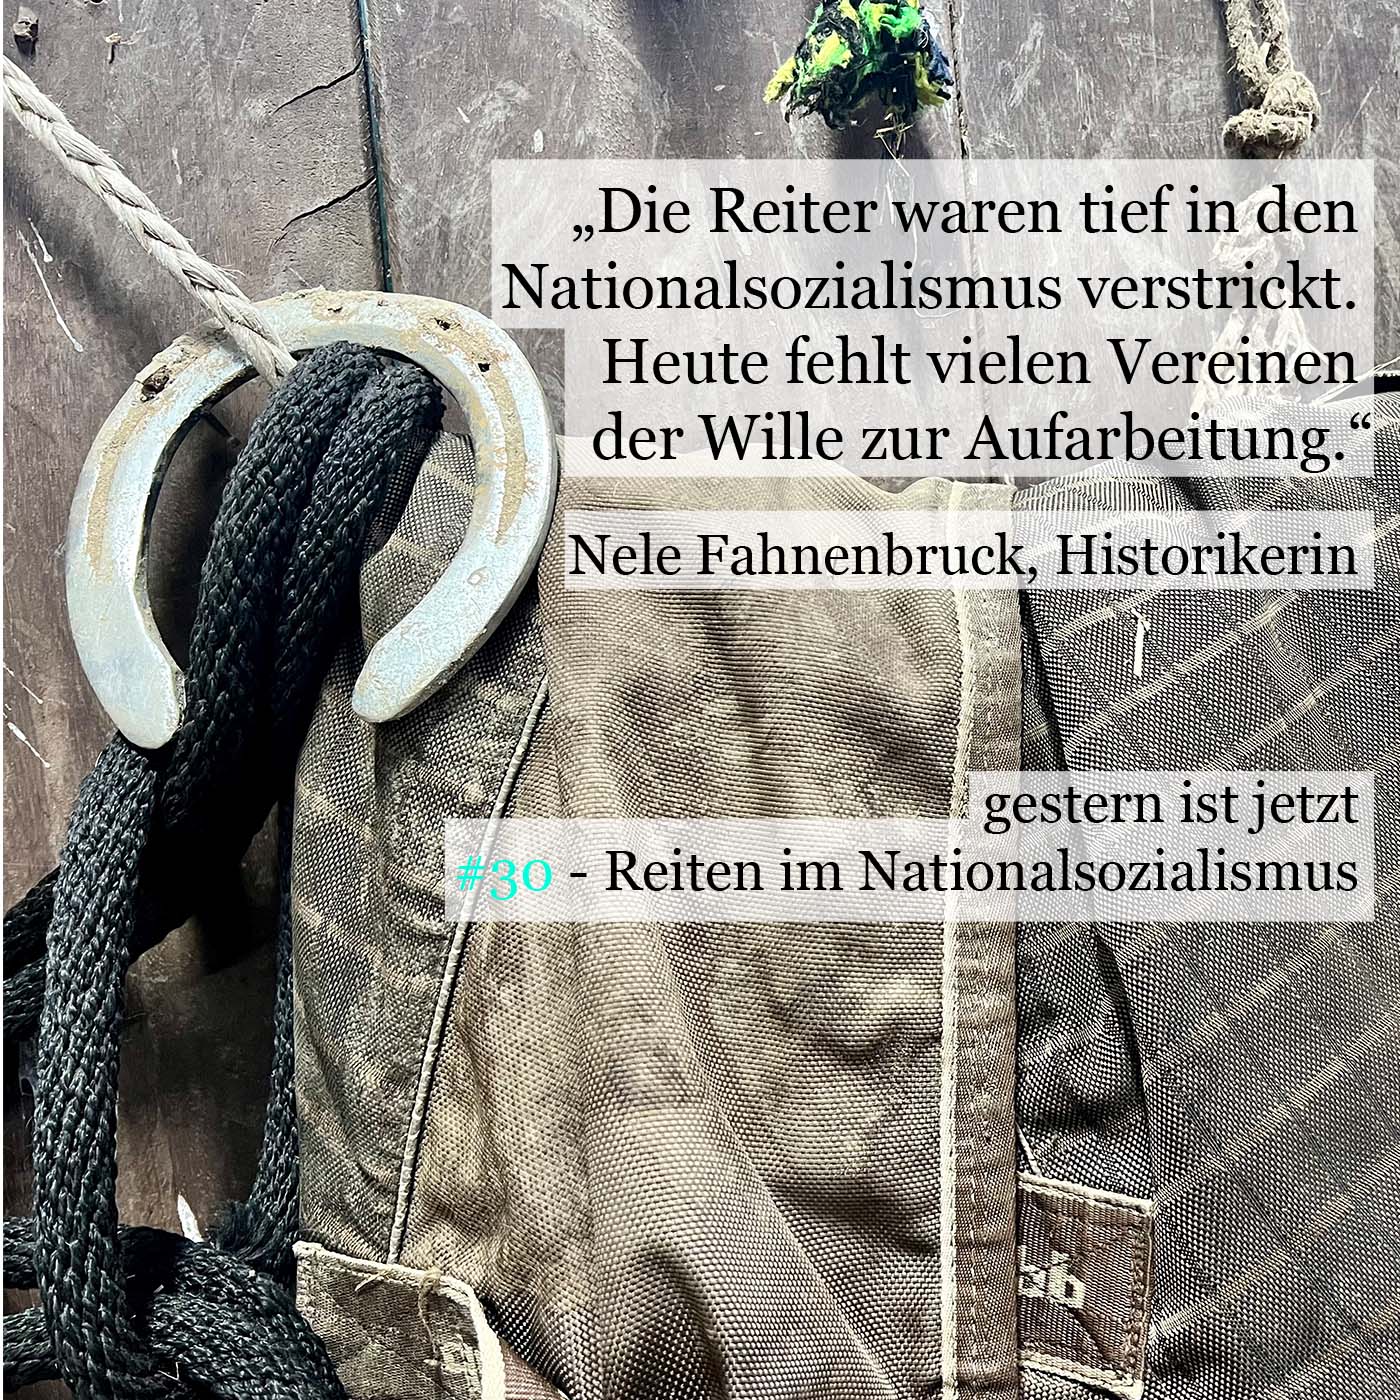 #30 - Reiten im Nationalsozialismus